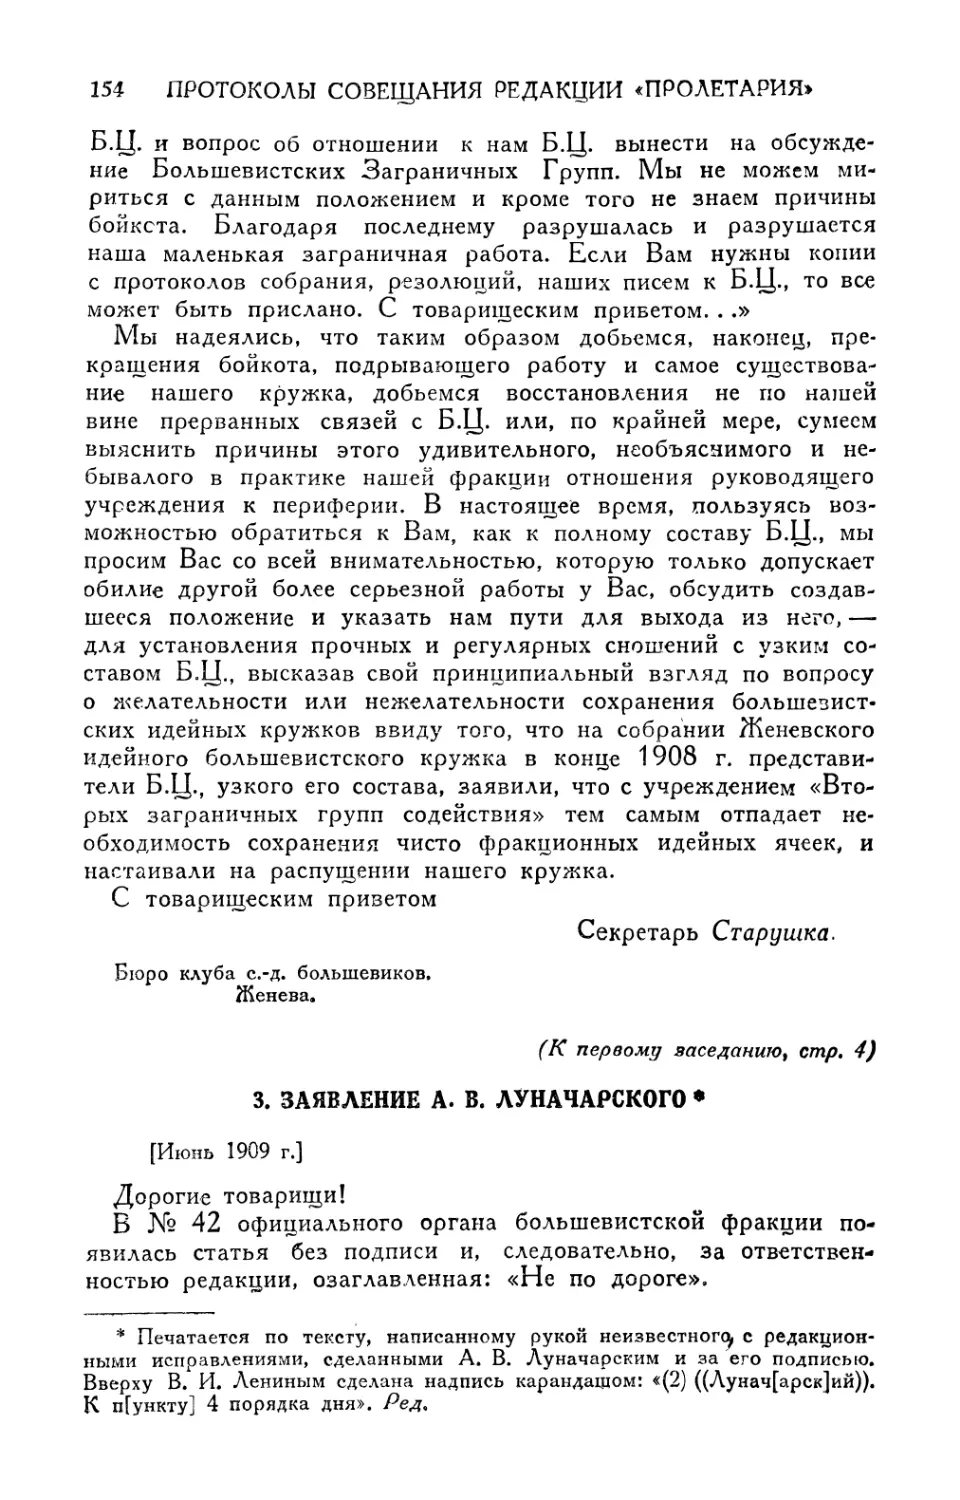 3. Заявление А. В. Луначарского [июнь 1909 г.]